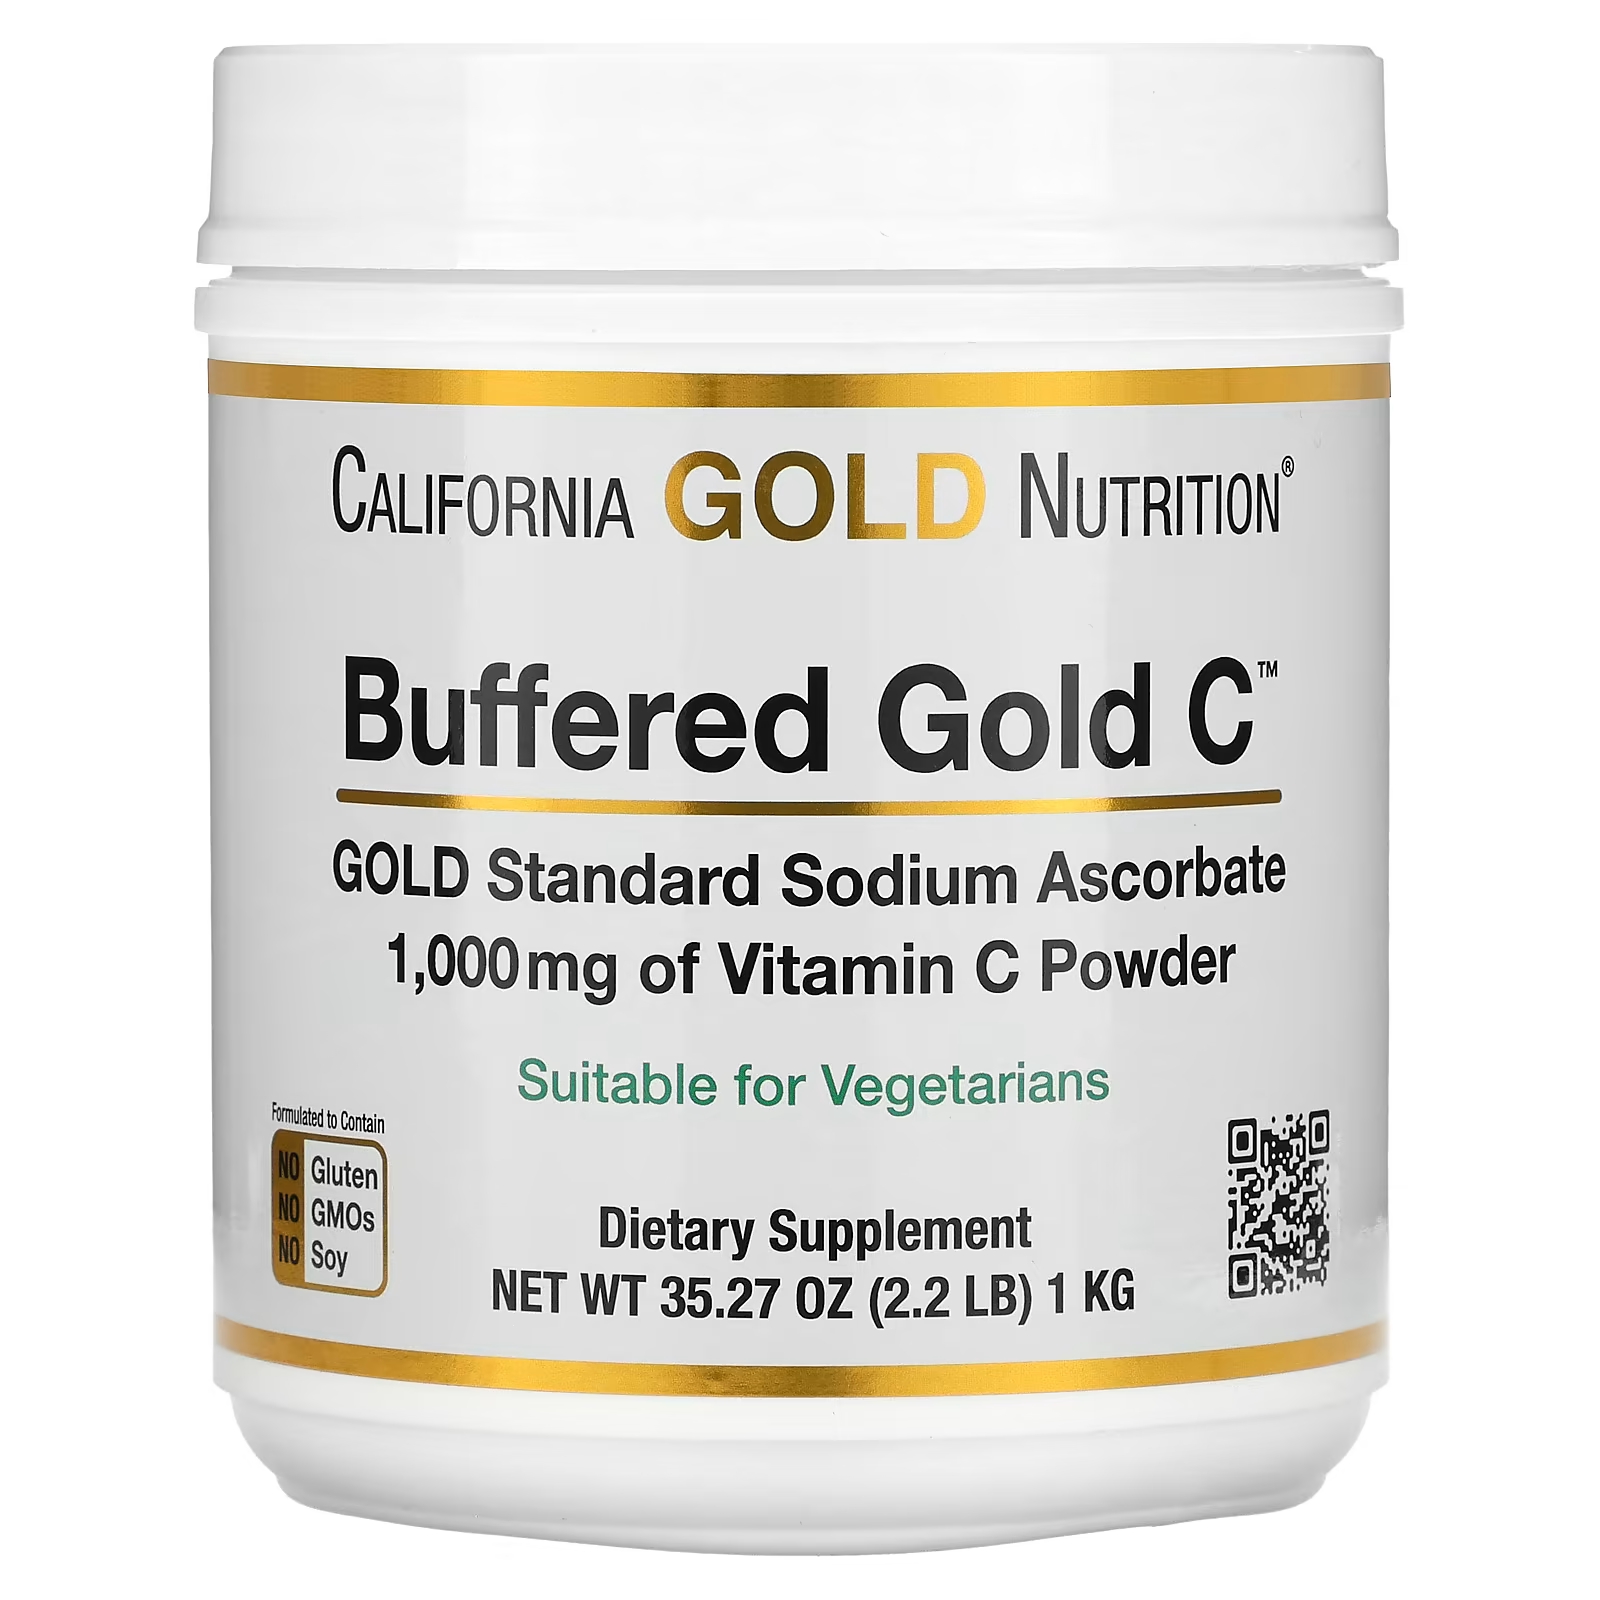 California Gold Nutrition Буферизованный некислотный порошок витамина С Gold C с аскорбатом натрия, 2,2 фунта (1 кг)